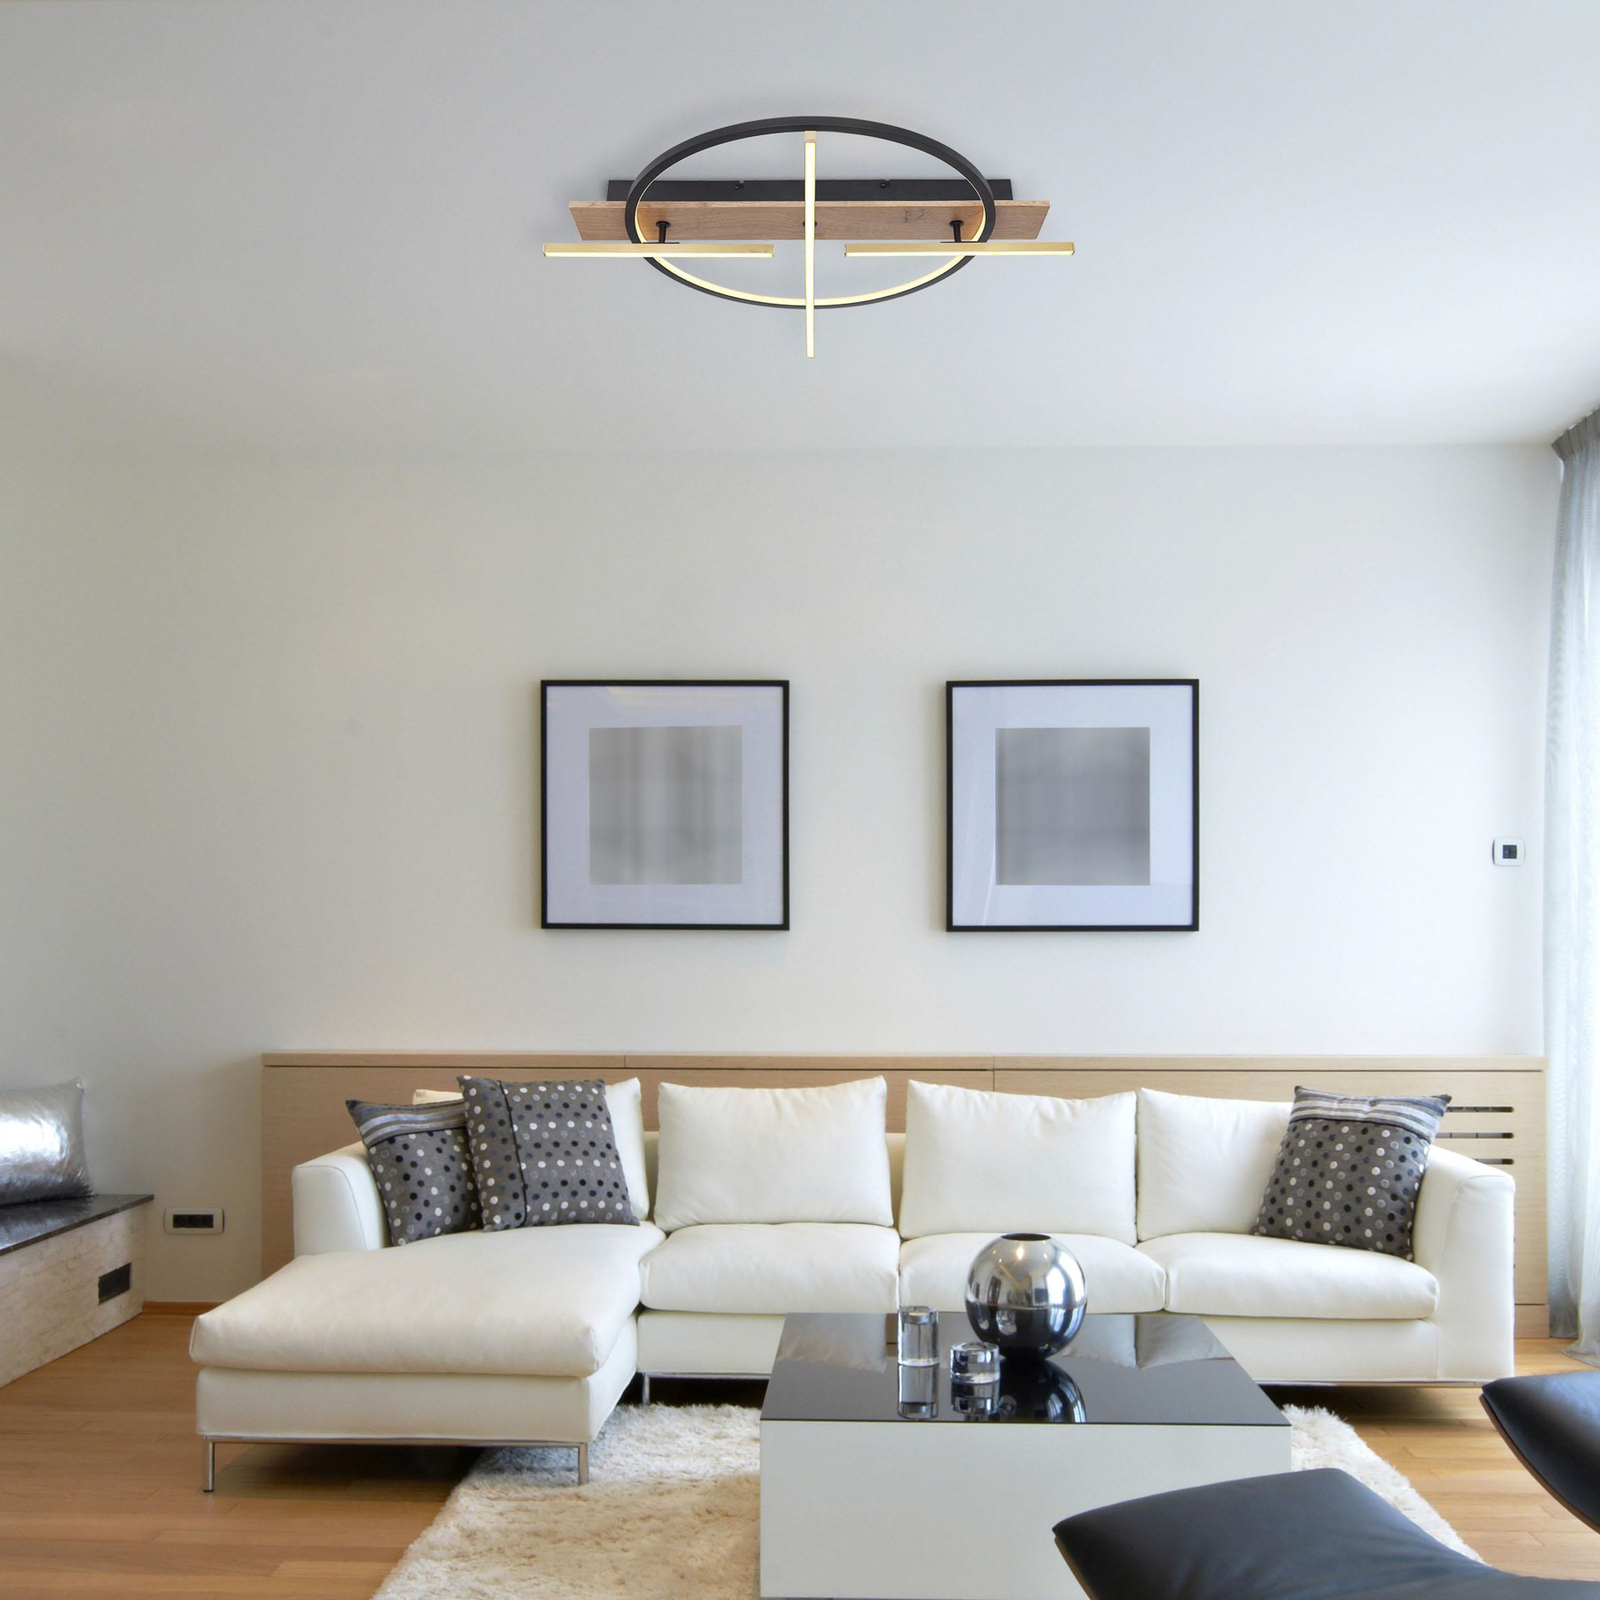 Beatrix LED ceiling light, length 44 cm, wood/black, wood